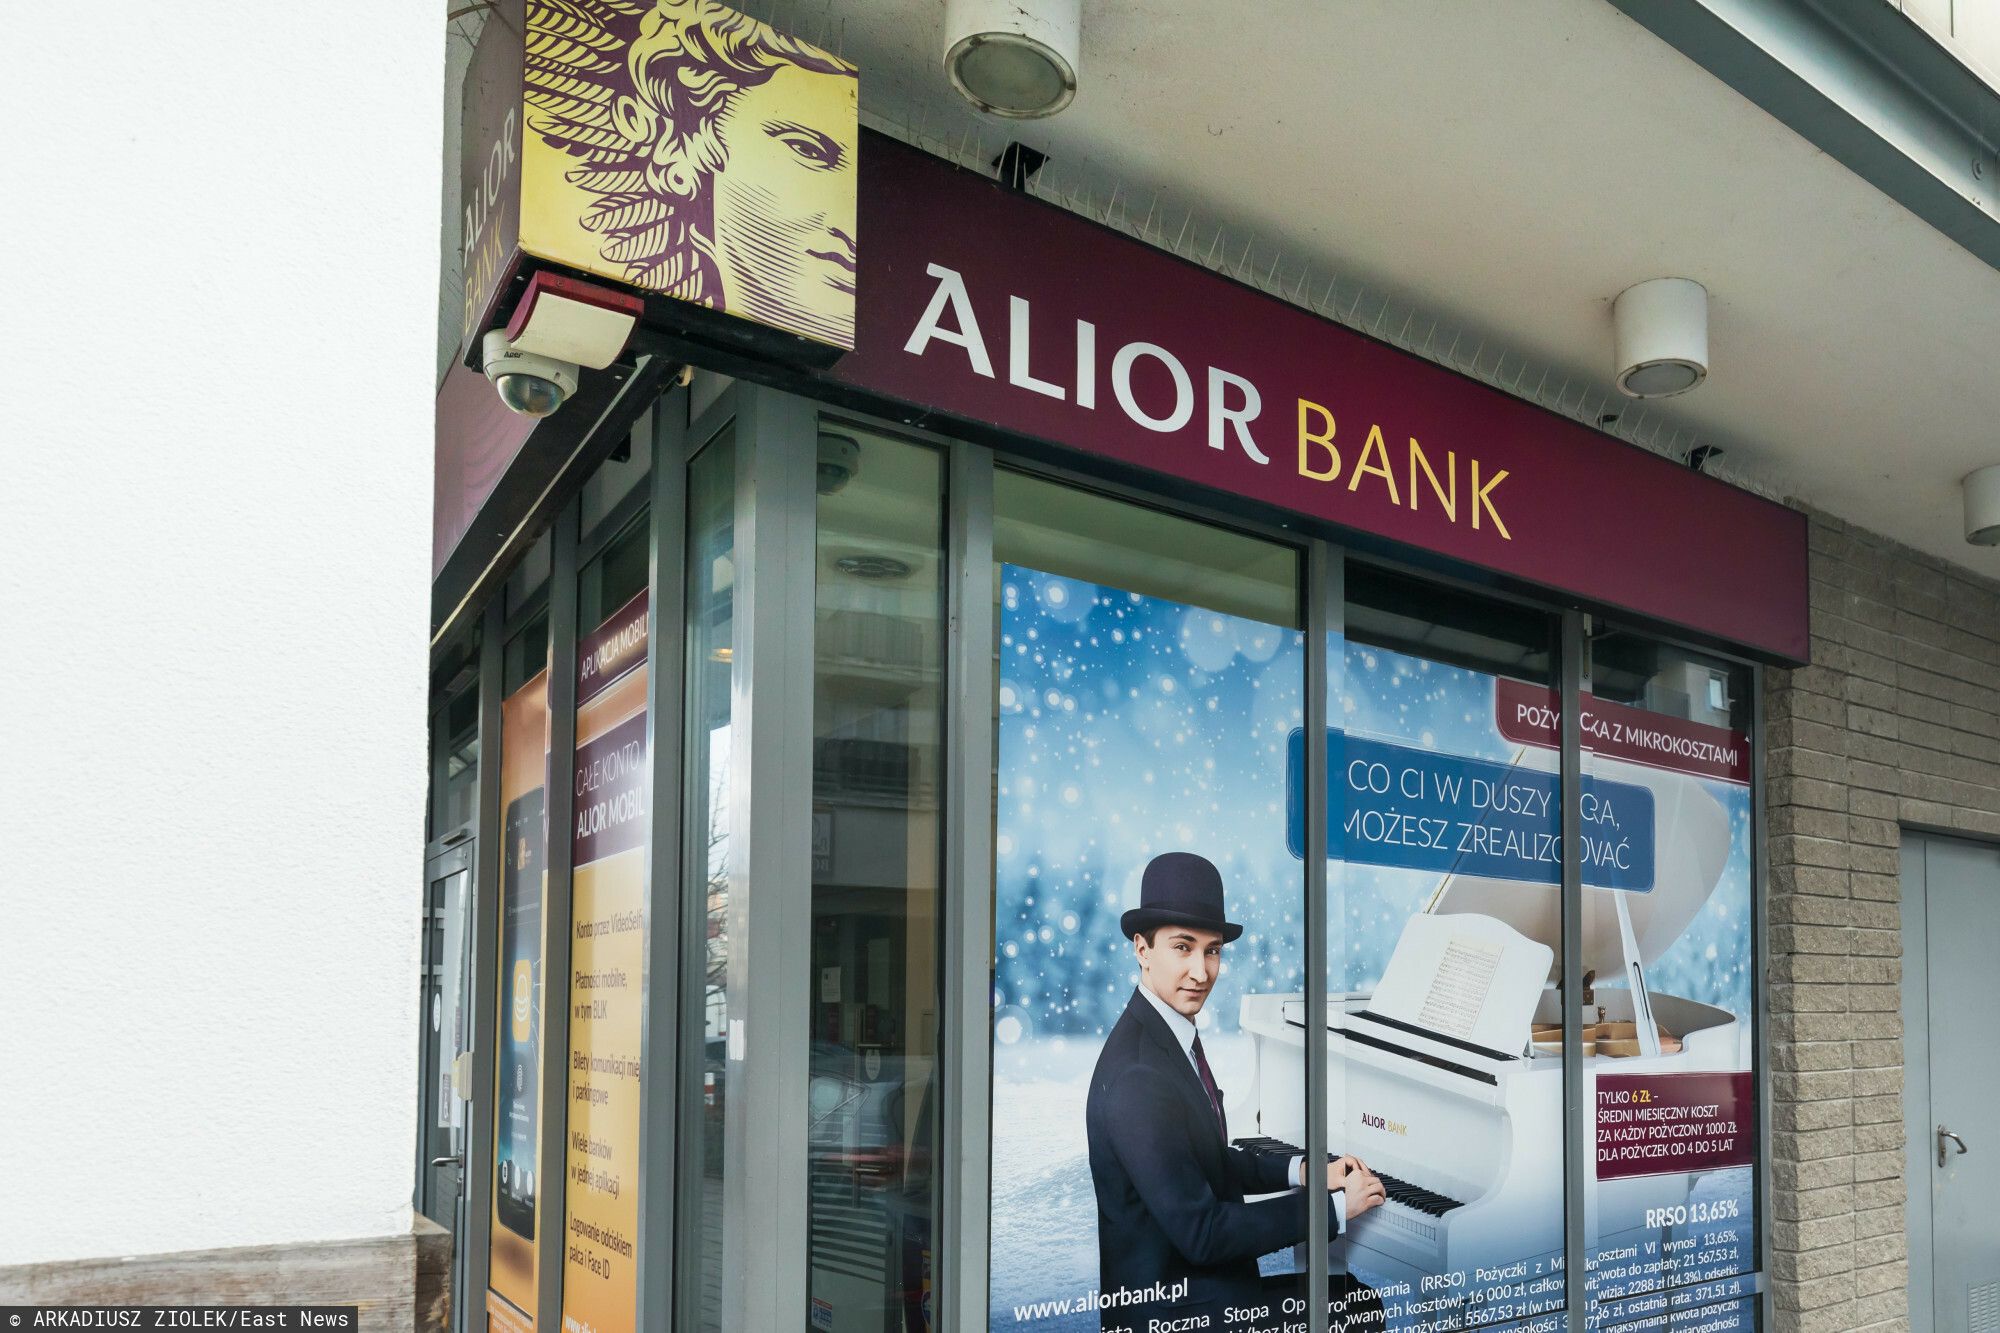 alior bank